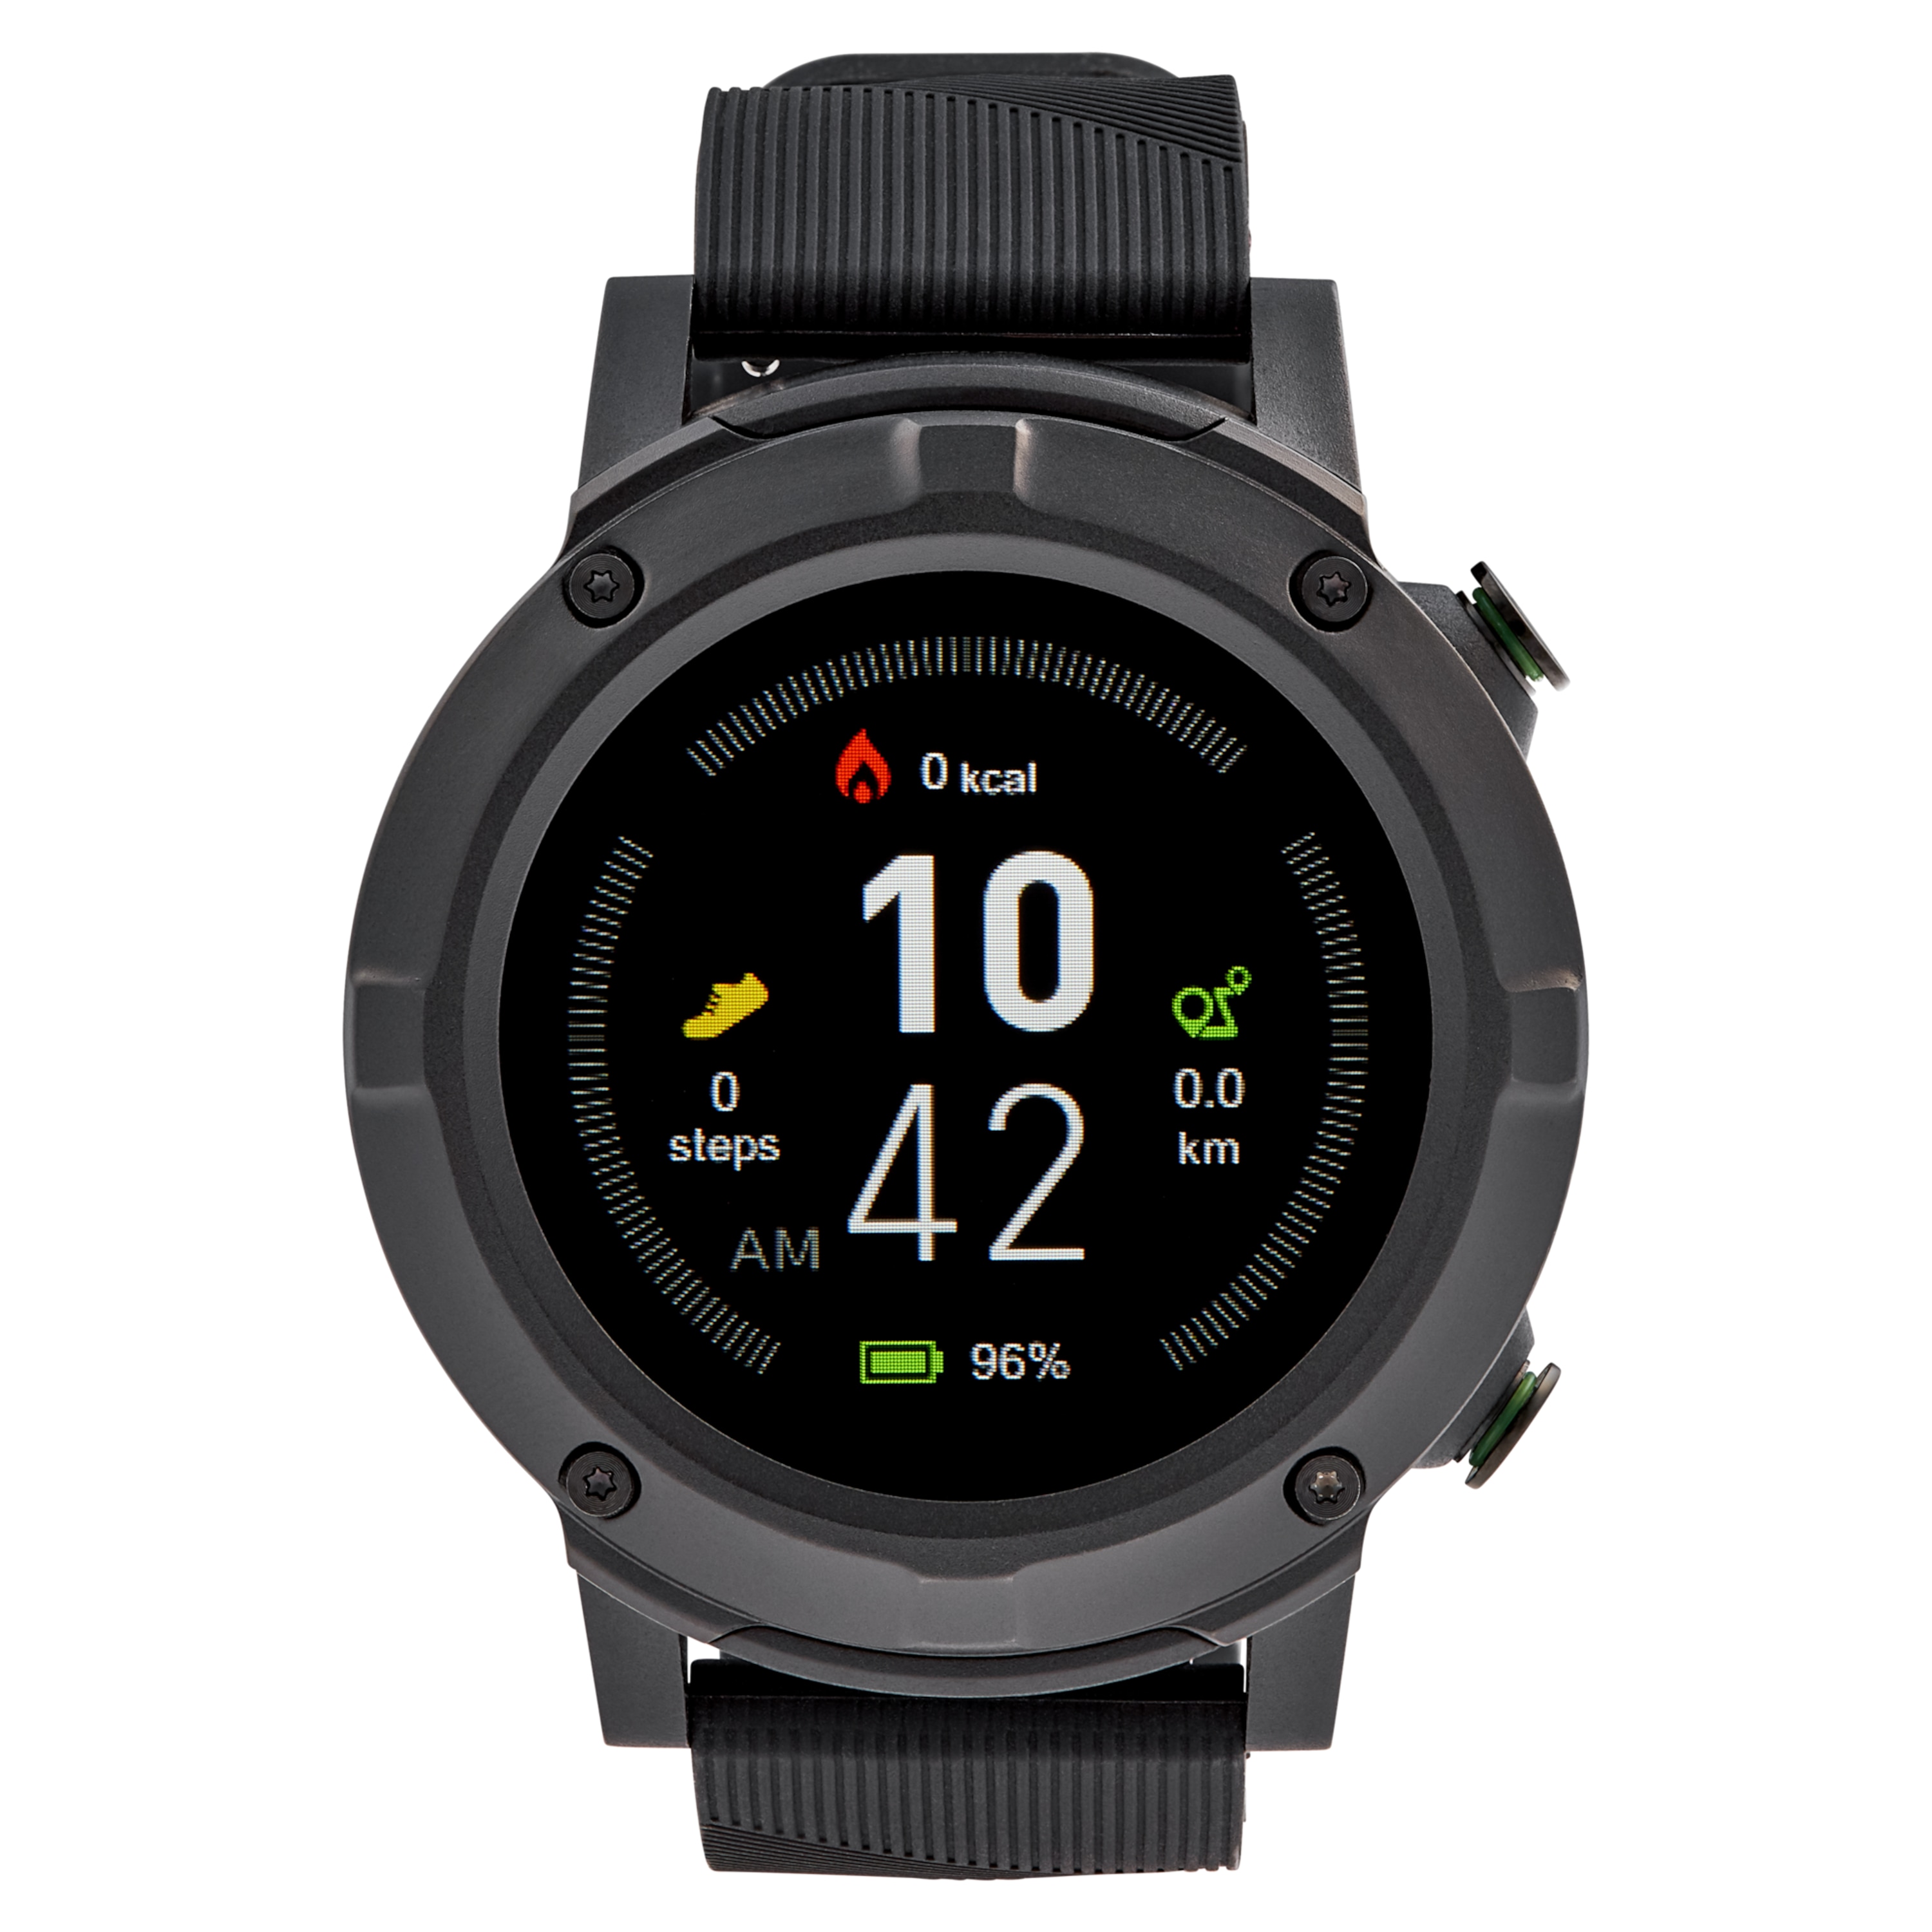 MEDION® LIFE® GPS Sportuhr S2400, 1,3'' Farbdisplay, Herzfrequenzmesser, Multi-Sport Modi, integriertes GPS Modul, Staub- und Wasserschutz nach IP68